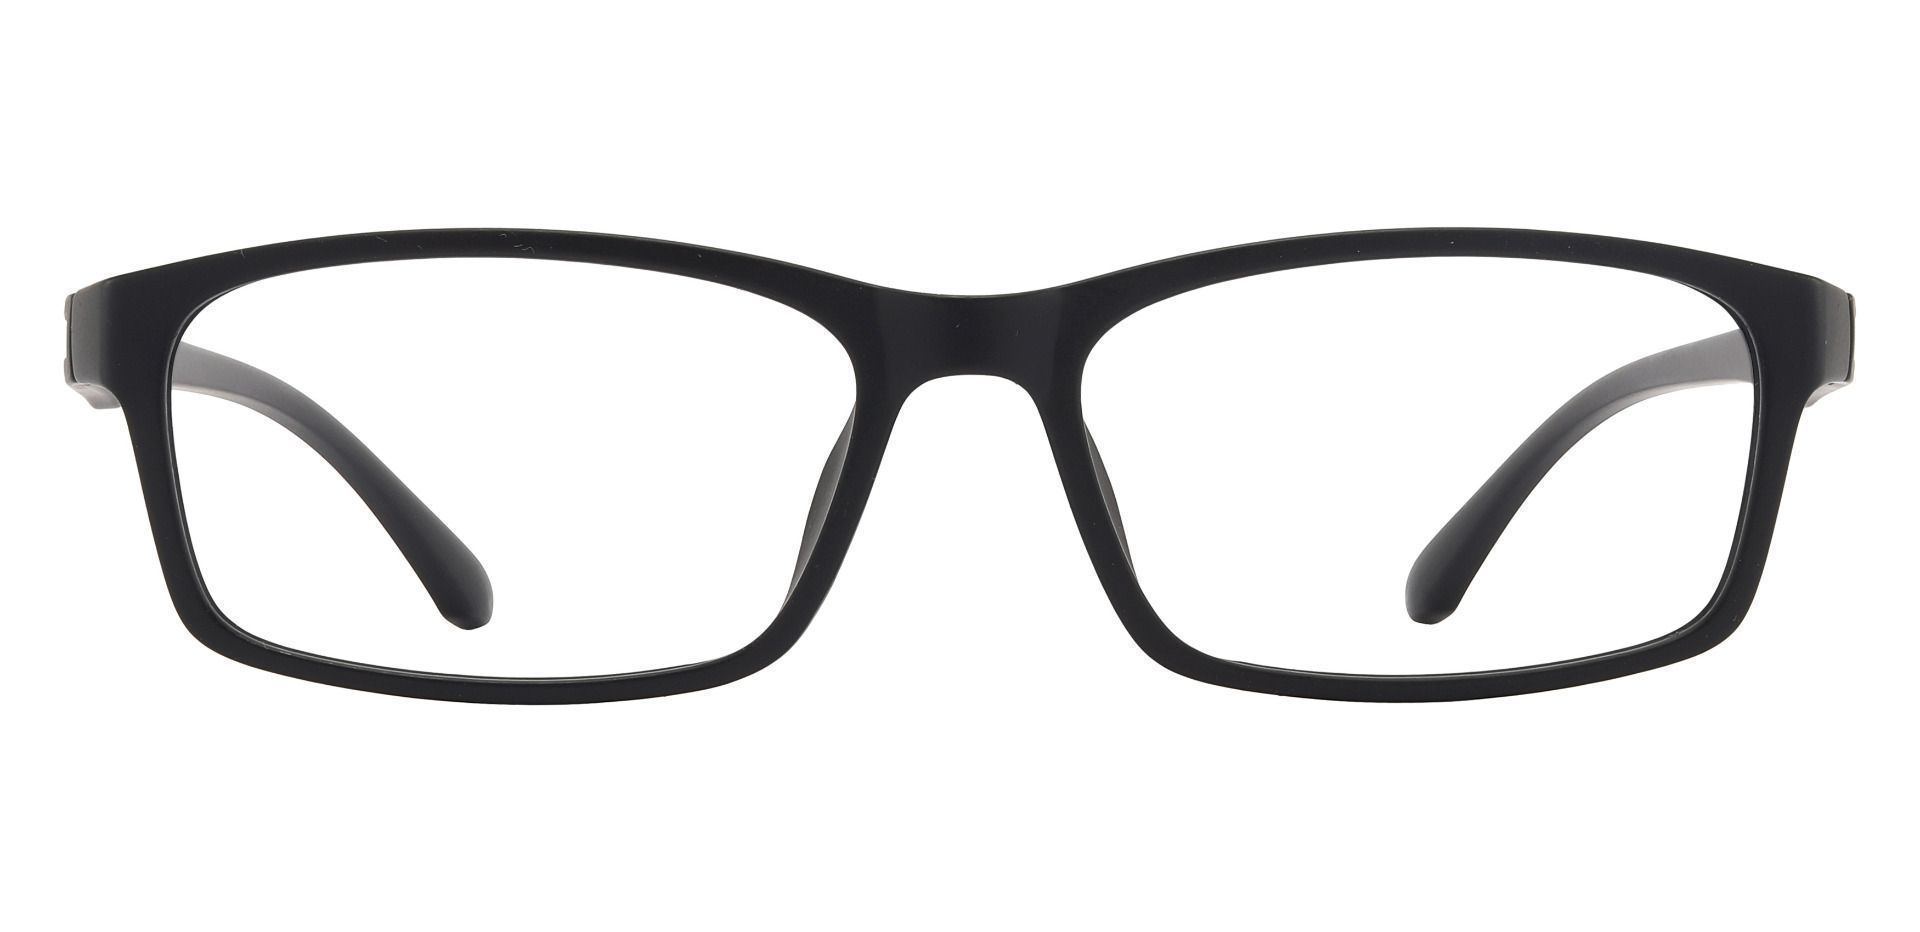 Poplar Rectangle Non-Rx Glasses -   Matte Black     